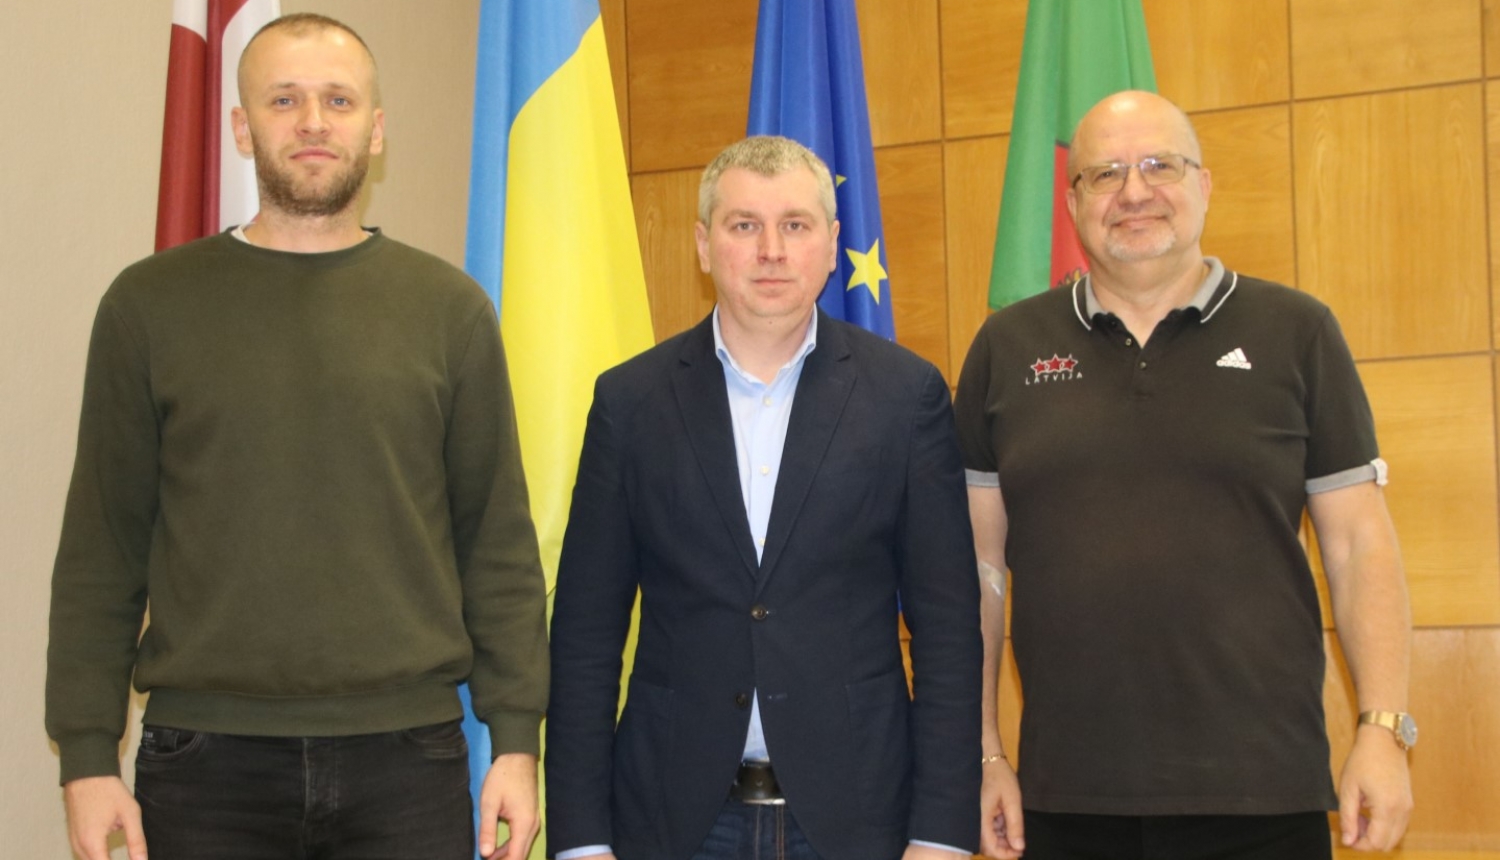 Pārrunā sadarbības iespējas ar Ukrainas basketbola klubu “Prometey”